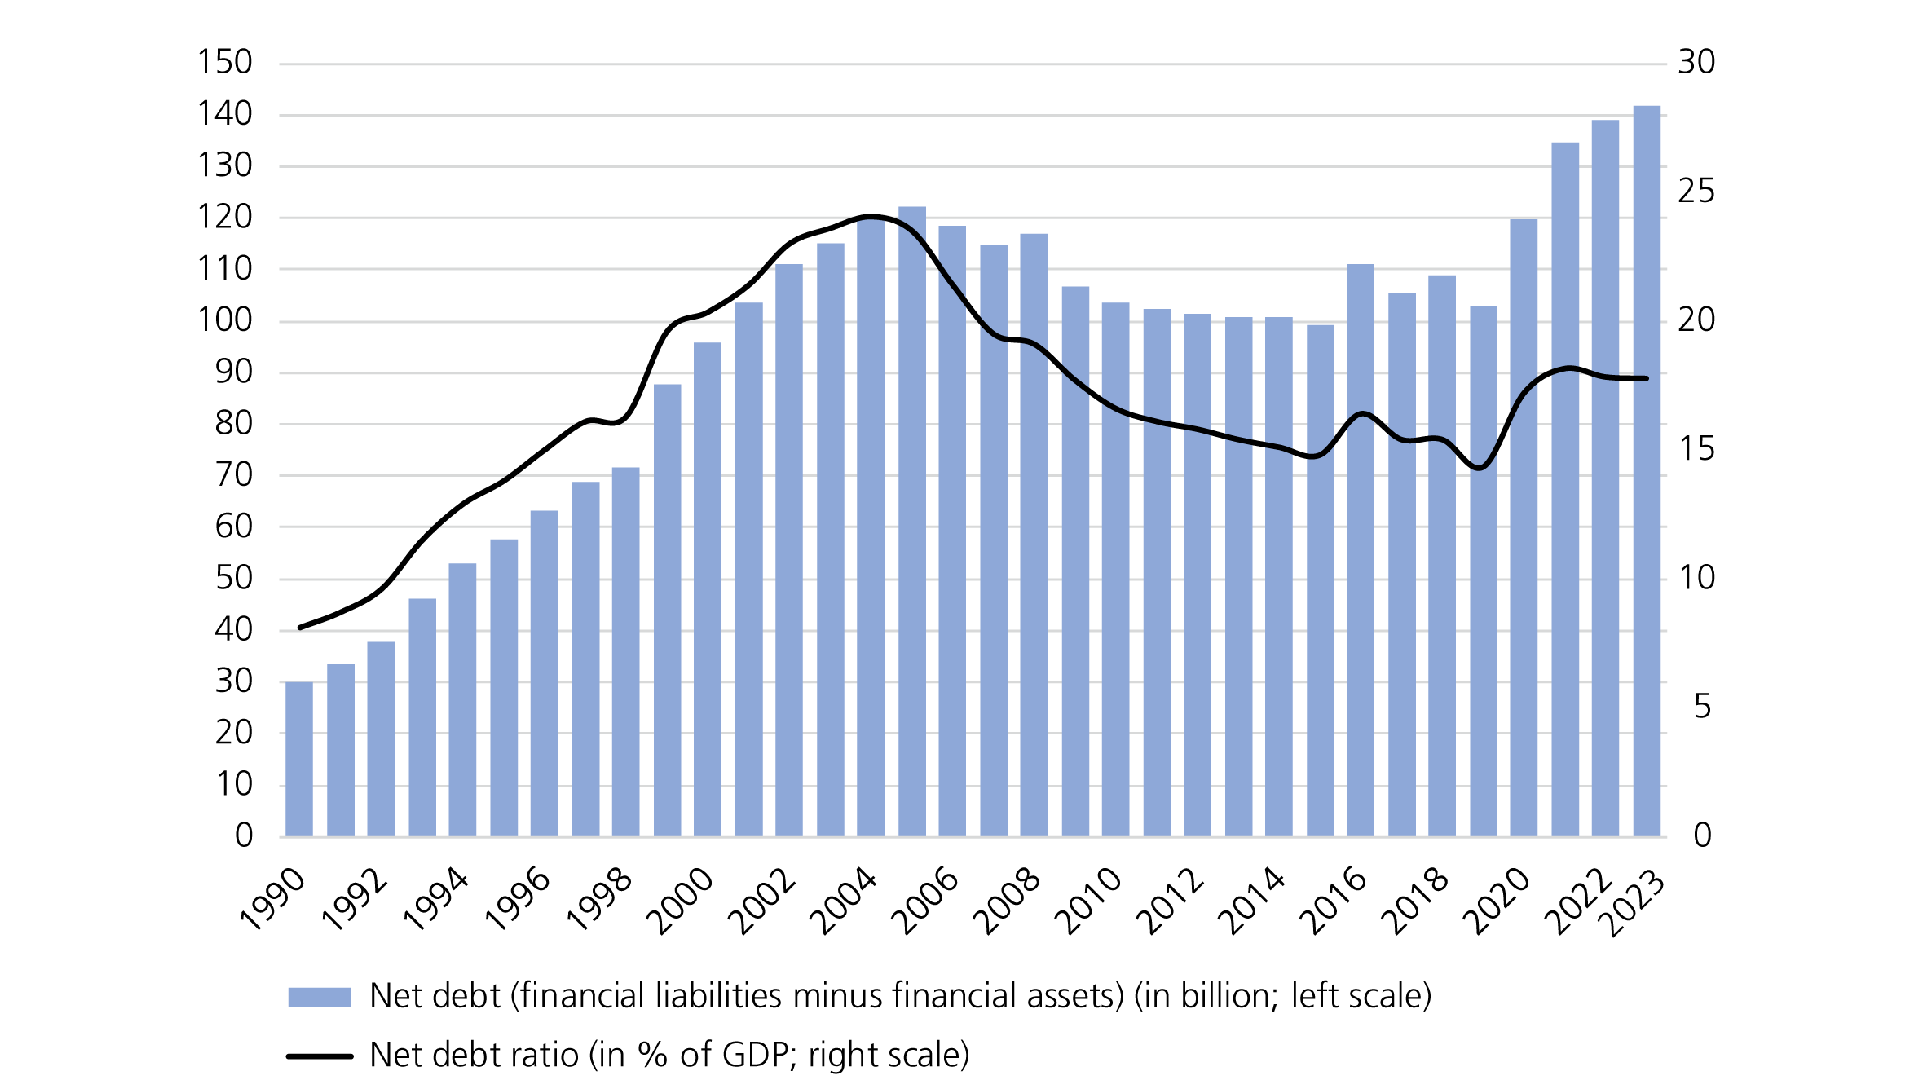 Net debt and debt ratio trends between 1990 and 2023